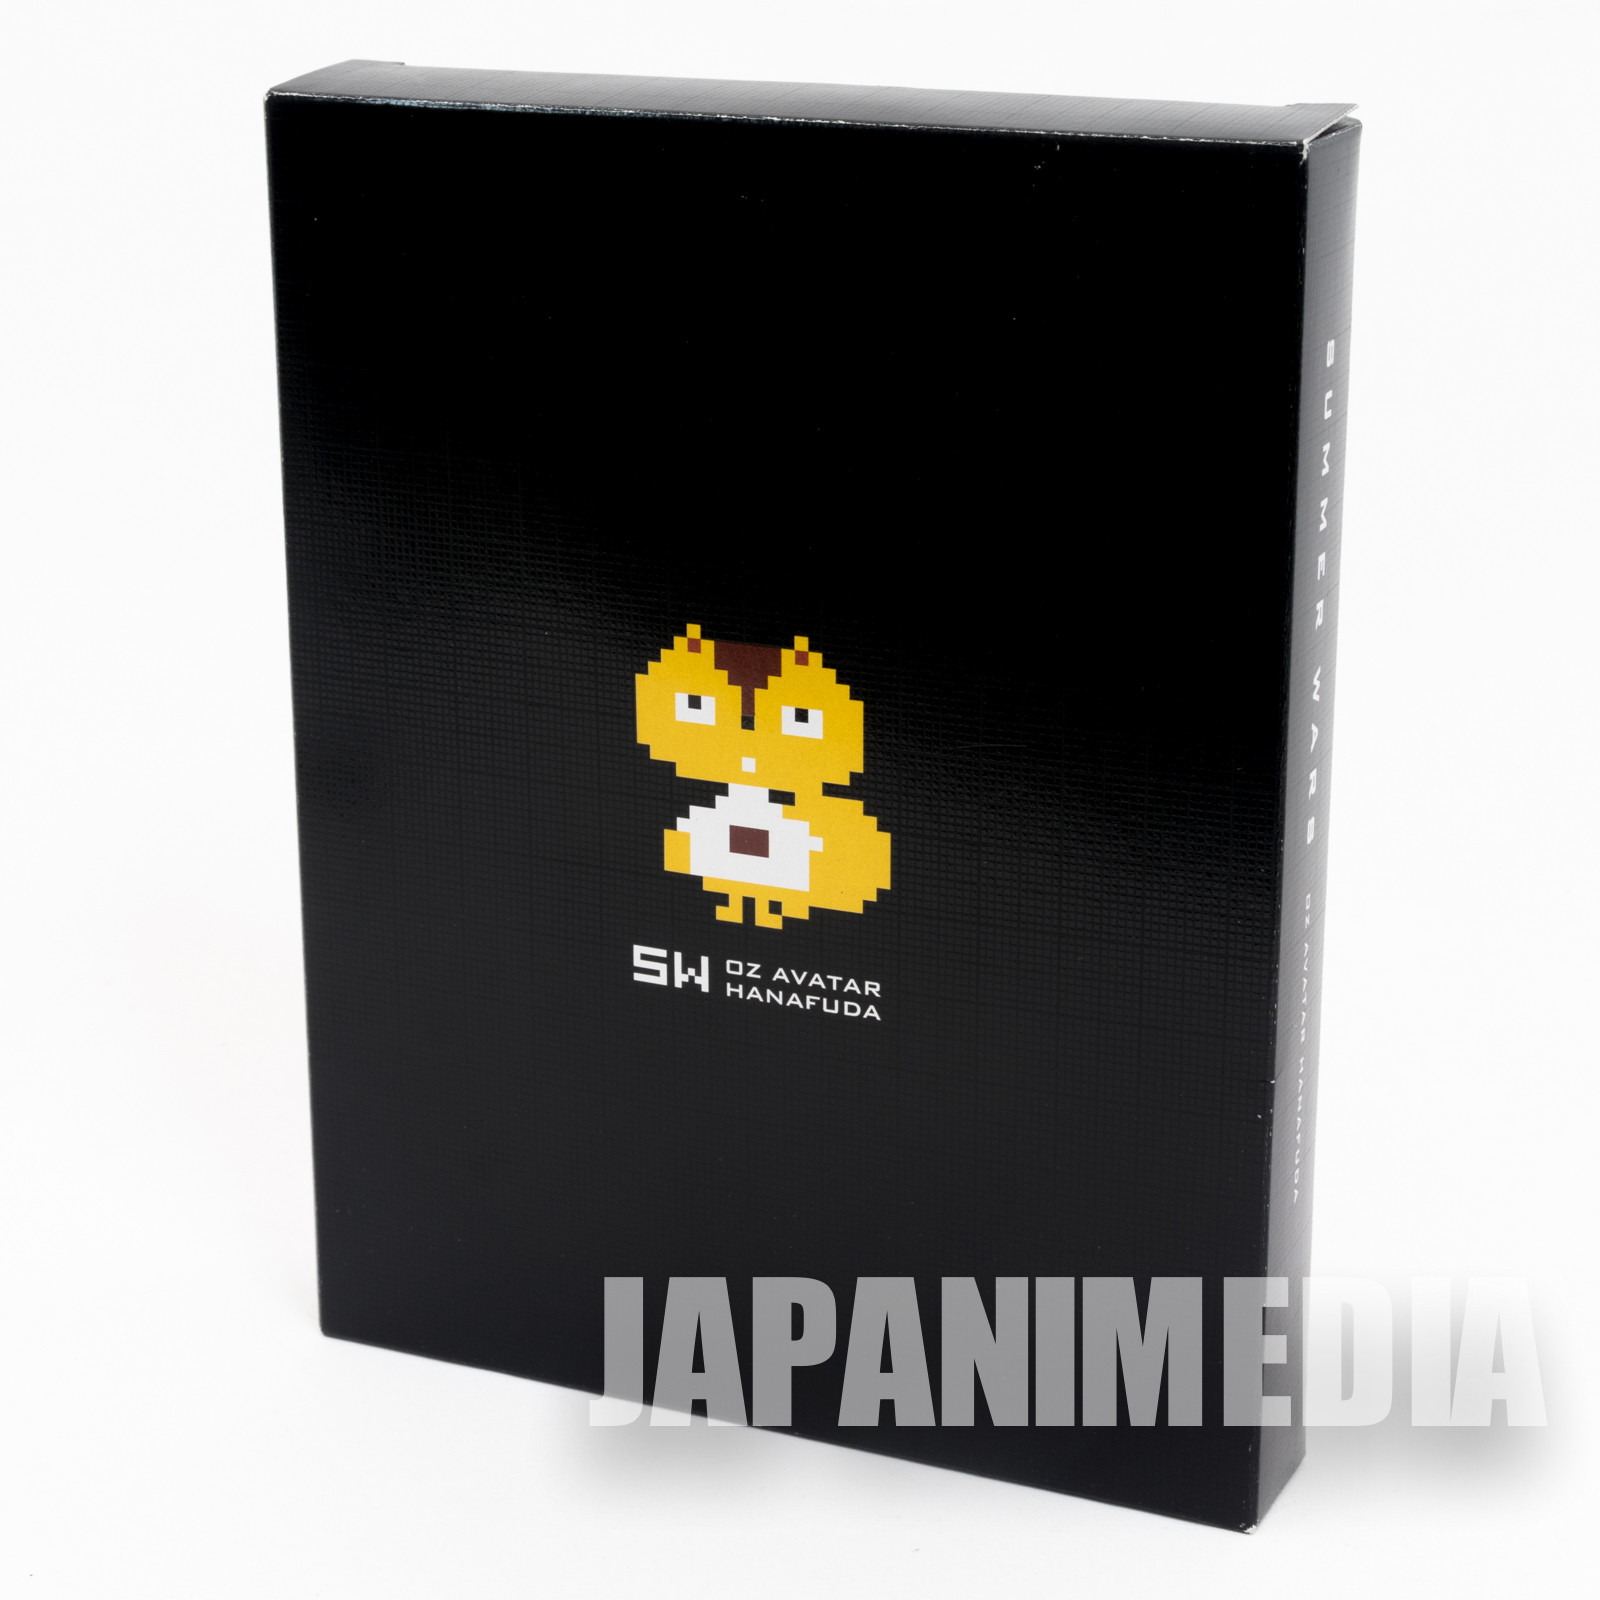 RARE! Summer Wars OZ Avatar Hanafuda Japanese Card Game JAPAN ANIME